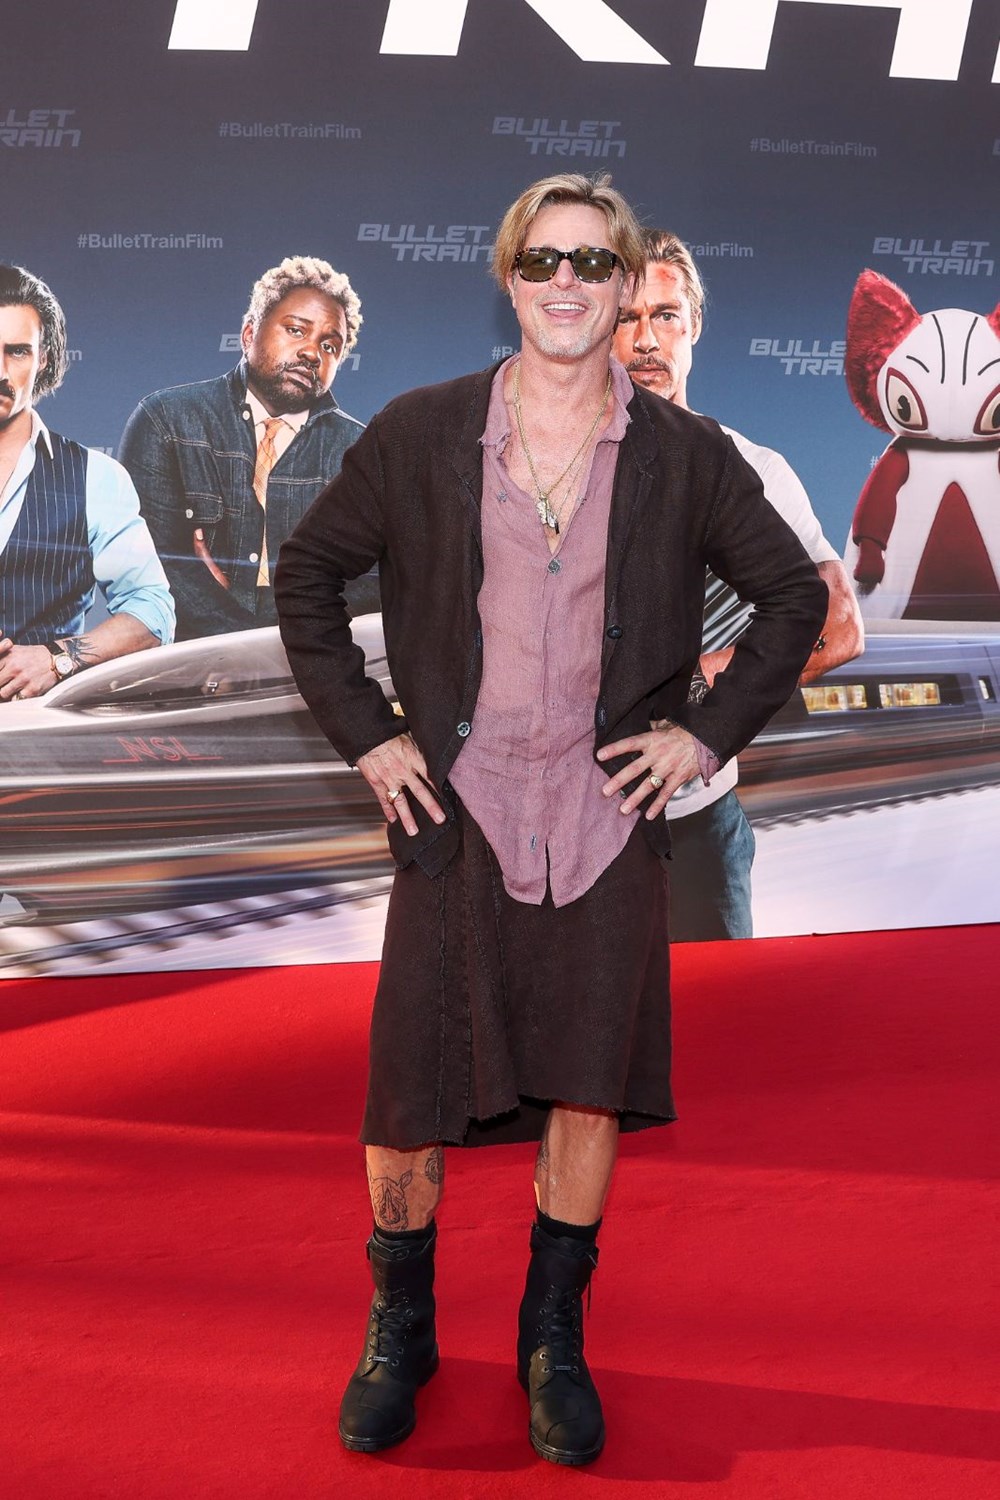 Brad Pitt Suikast Treni filminin galasında etek giydi - 3